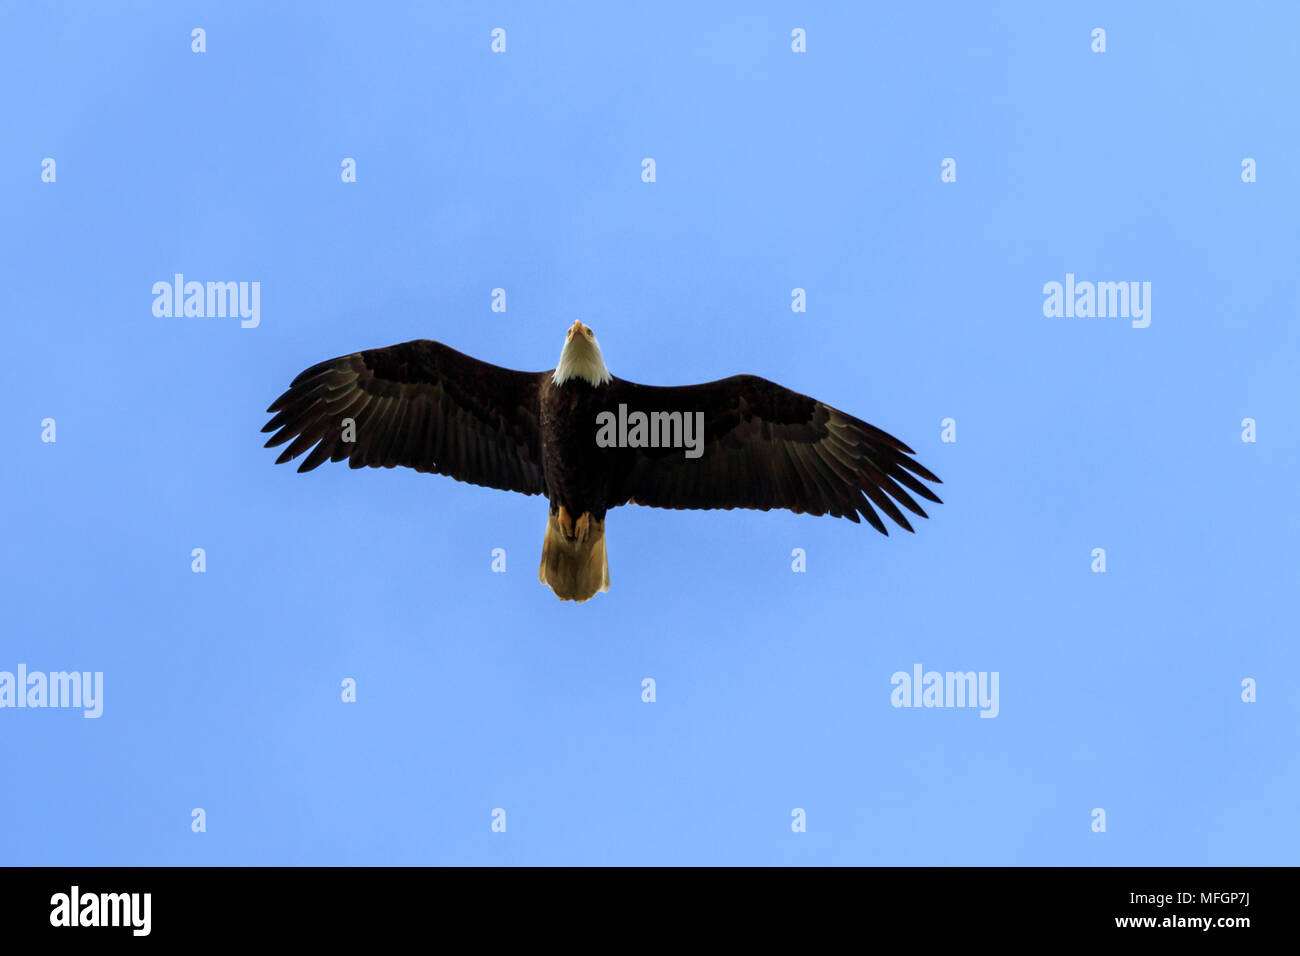 Adler fliegen vor blauem Himmel Hintergrund Stockfoto